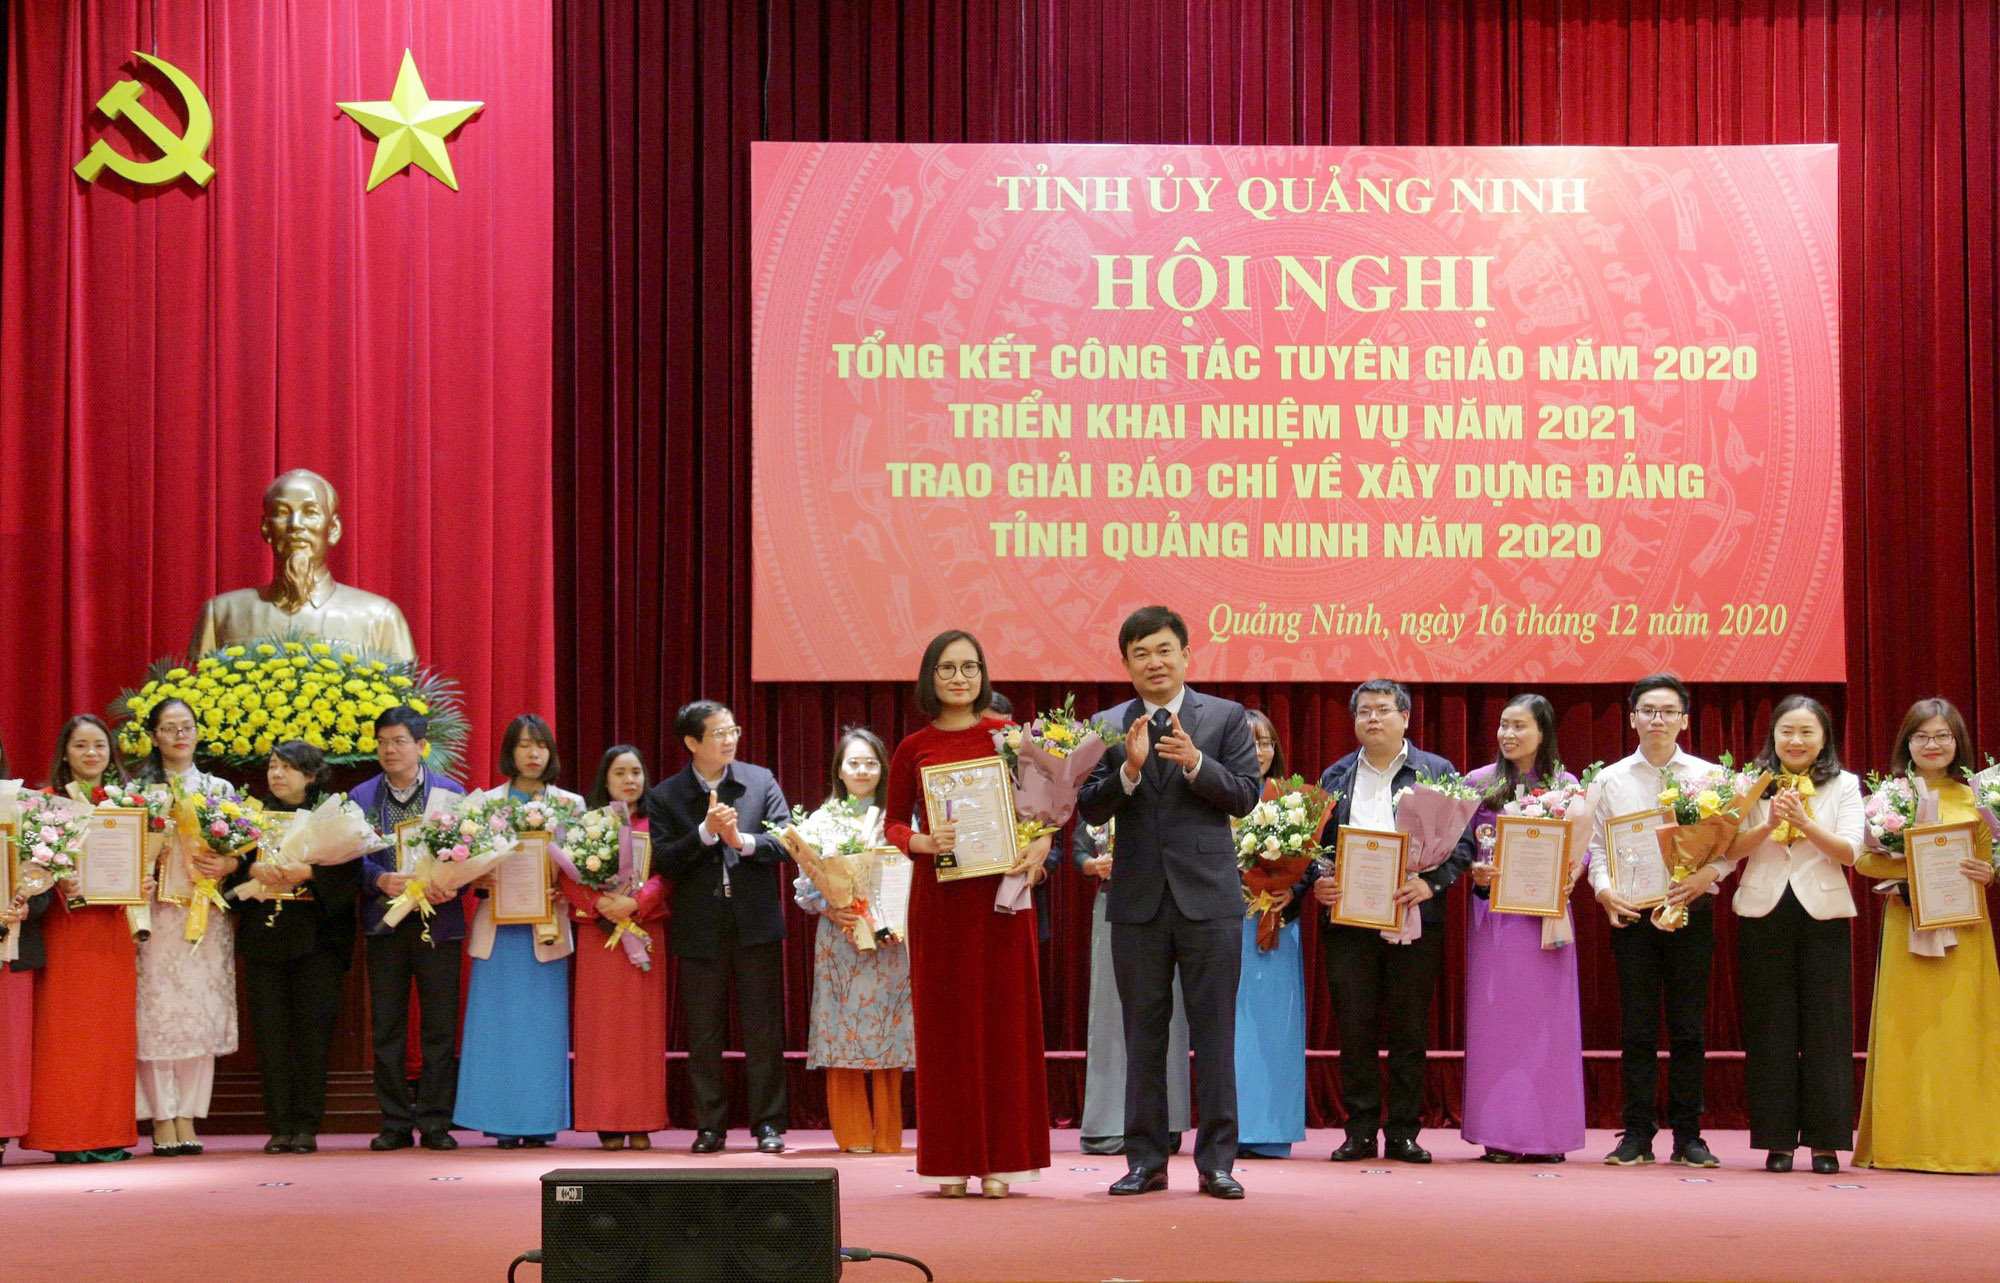 Đồng chí Ngô Hoàng Ngân, Phó Bí thư Thường trực Tỉnh ủy trao giải đặc biệt cho nhóm tác giả Bùi Thị Thu Hương, Bùi Thị Thùy Linh với loạt bài: 